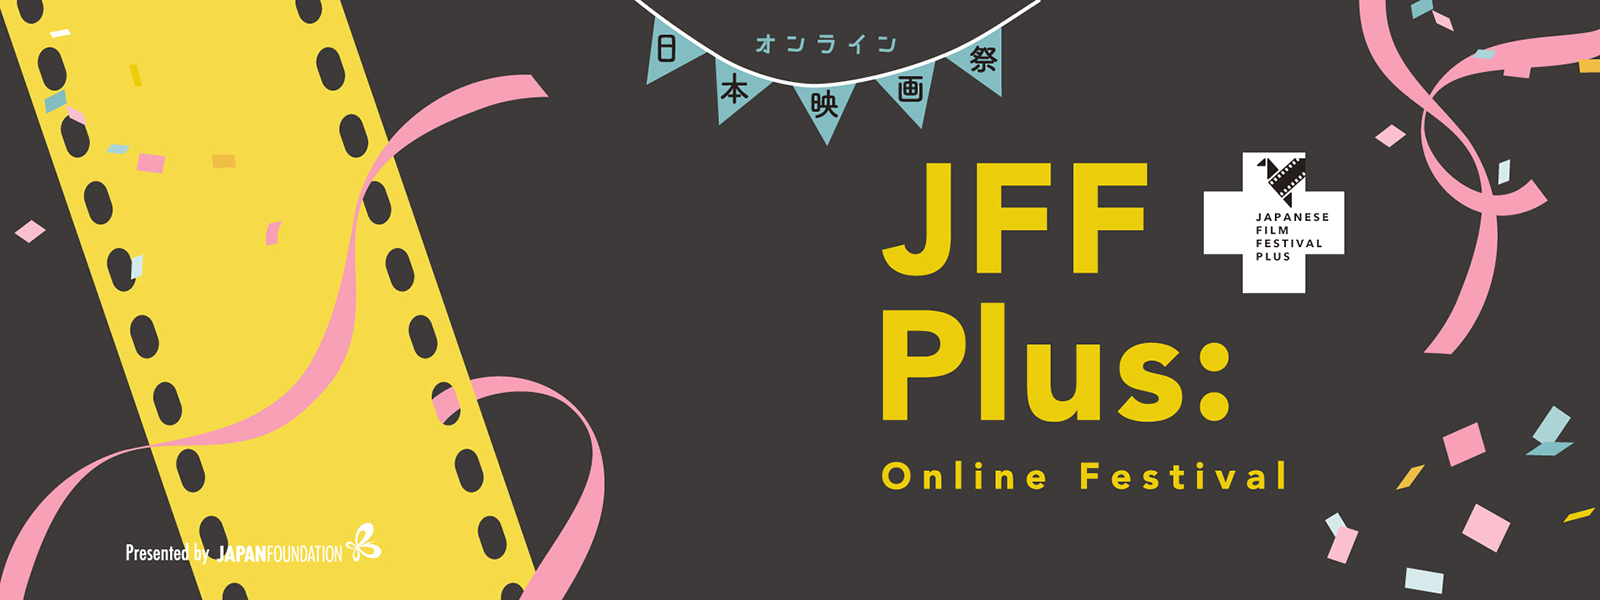 festival online de filmes japoneses